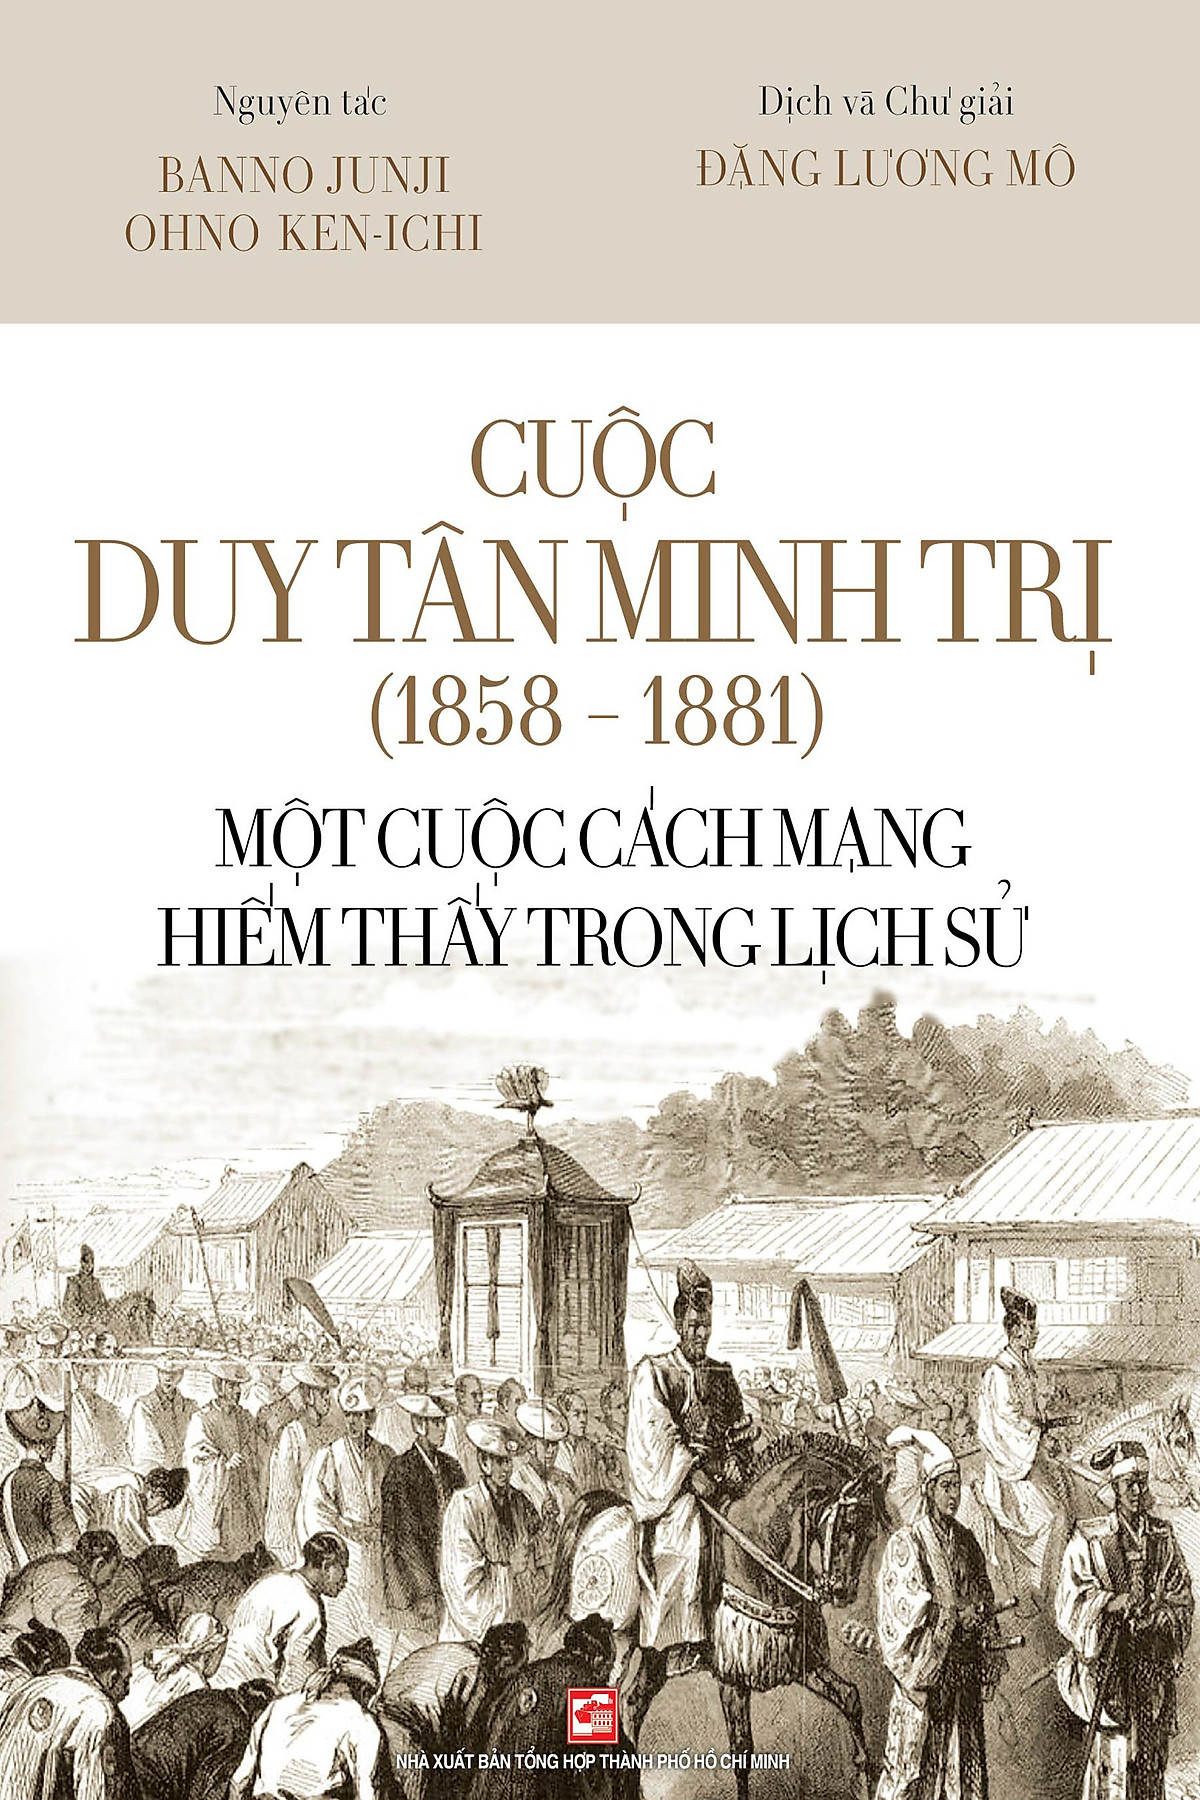 Cuộc Duy Tân Minh Trị (1858 - 1881) - Một cuộc cách mạng hiếm thấy trong lịch sử ebook PDF-EPUB-AWZ3-PRC-MOBI